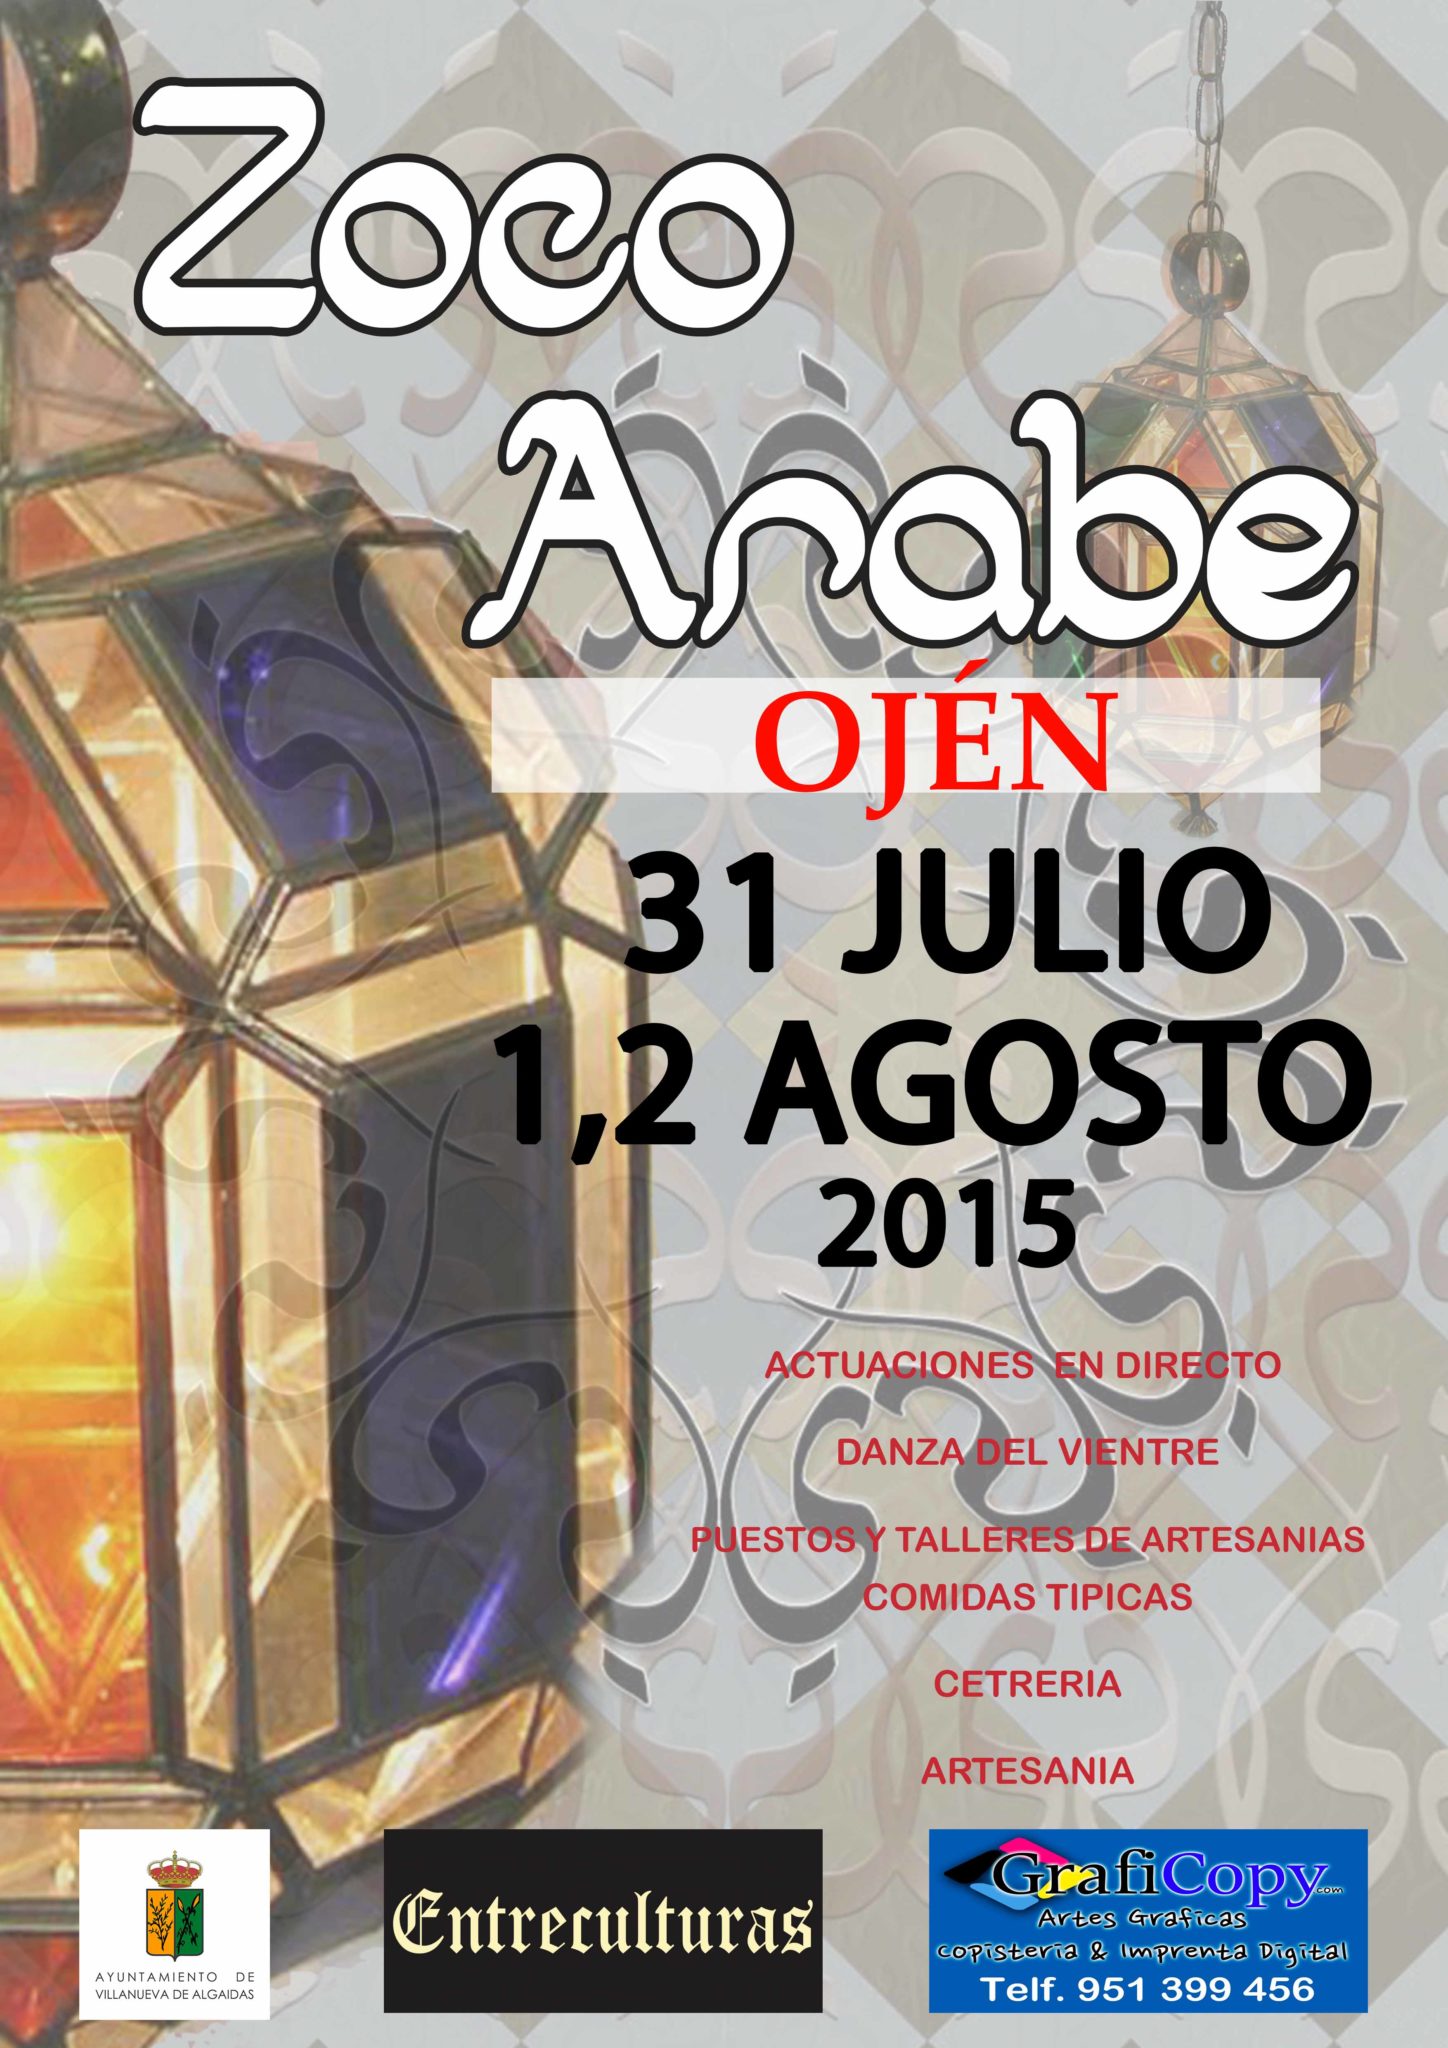 31 de Julio al 02 de Agosto del 2015 – Zoco arabe en Ojen, Malaga